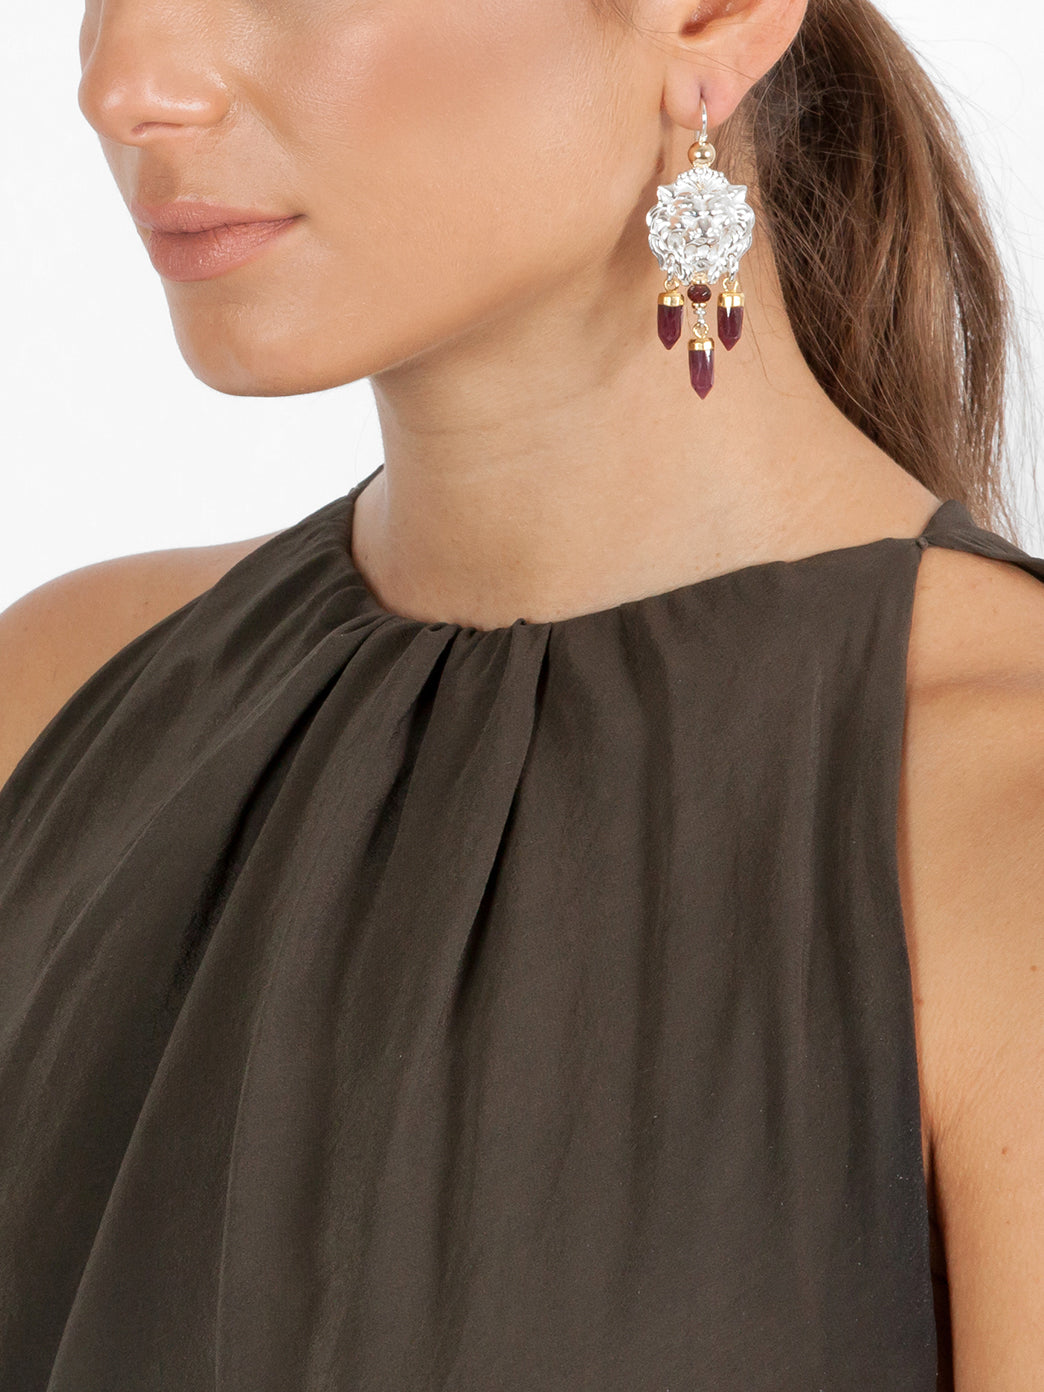 Fiorina Jewellery Taormina Earrings Garnet Model